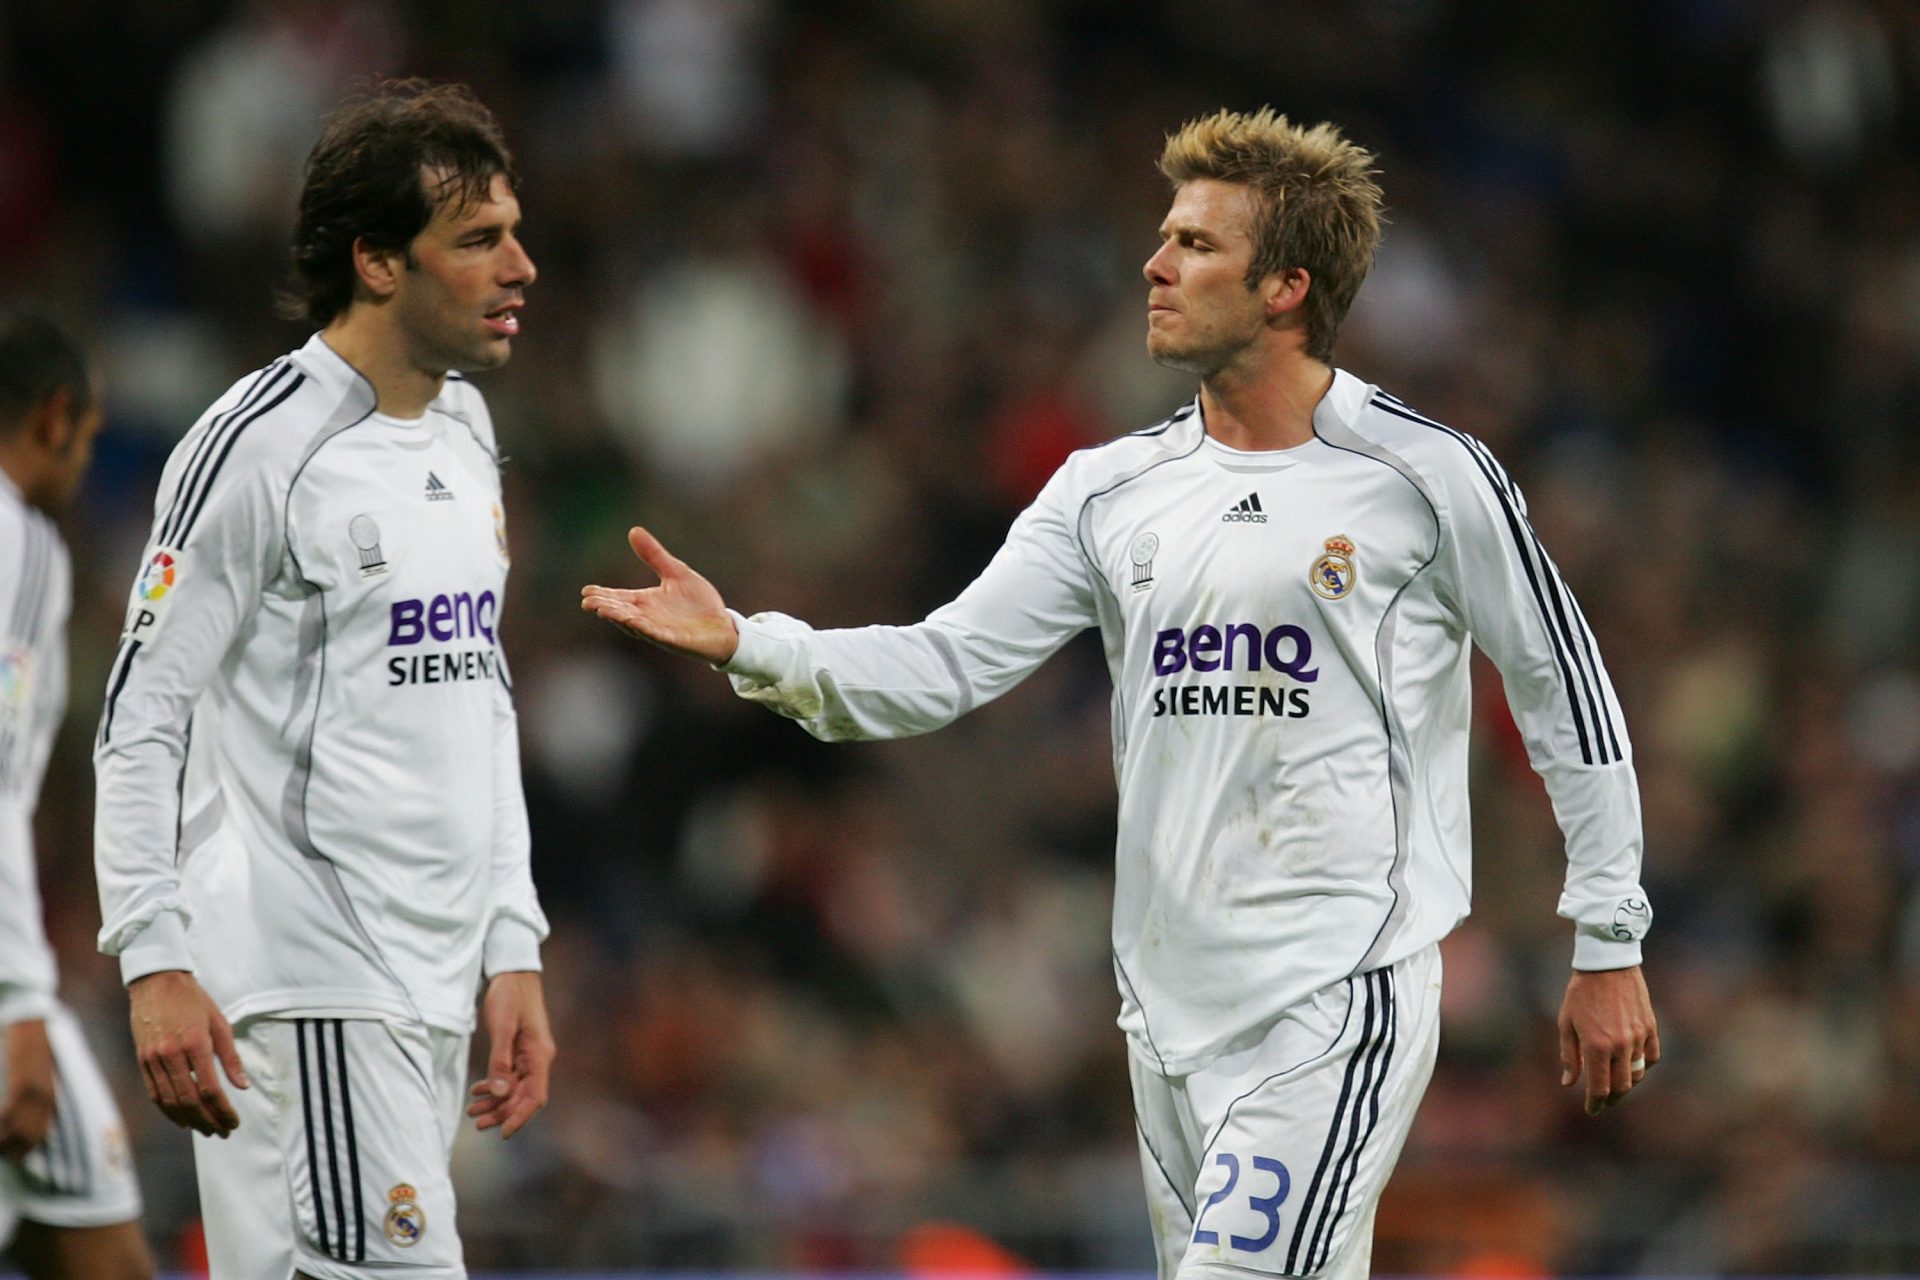 <p>Il Real Madrid bussa alla sua porta nel 2006 e riesce ad assicurarsi un trasferimento di 15 milioni di euro, in base ai dati di Transfermarkt. Al Santiago Bernabeu viene accolto a braccia aperte e i gol non tardano ad arrivare. Alla sua seconda partita di campionato nella Liga, Van Nistelrooy segna una tripletta.</p>